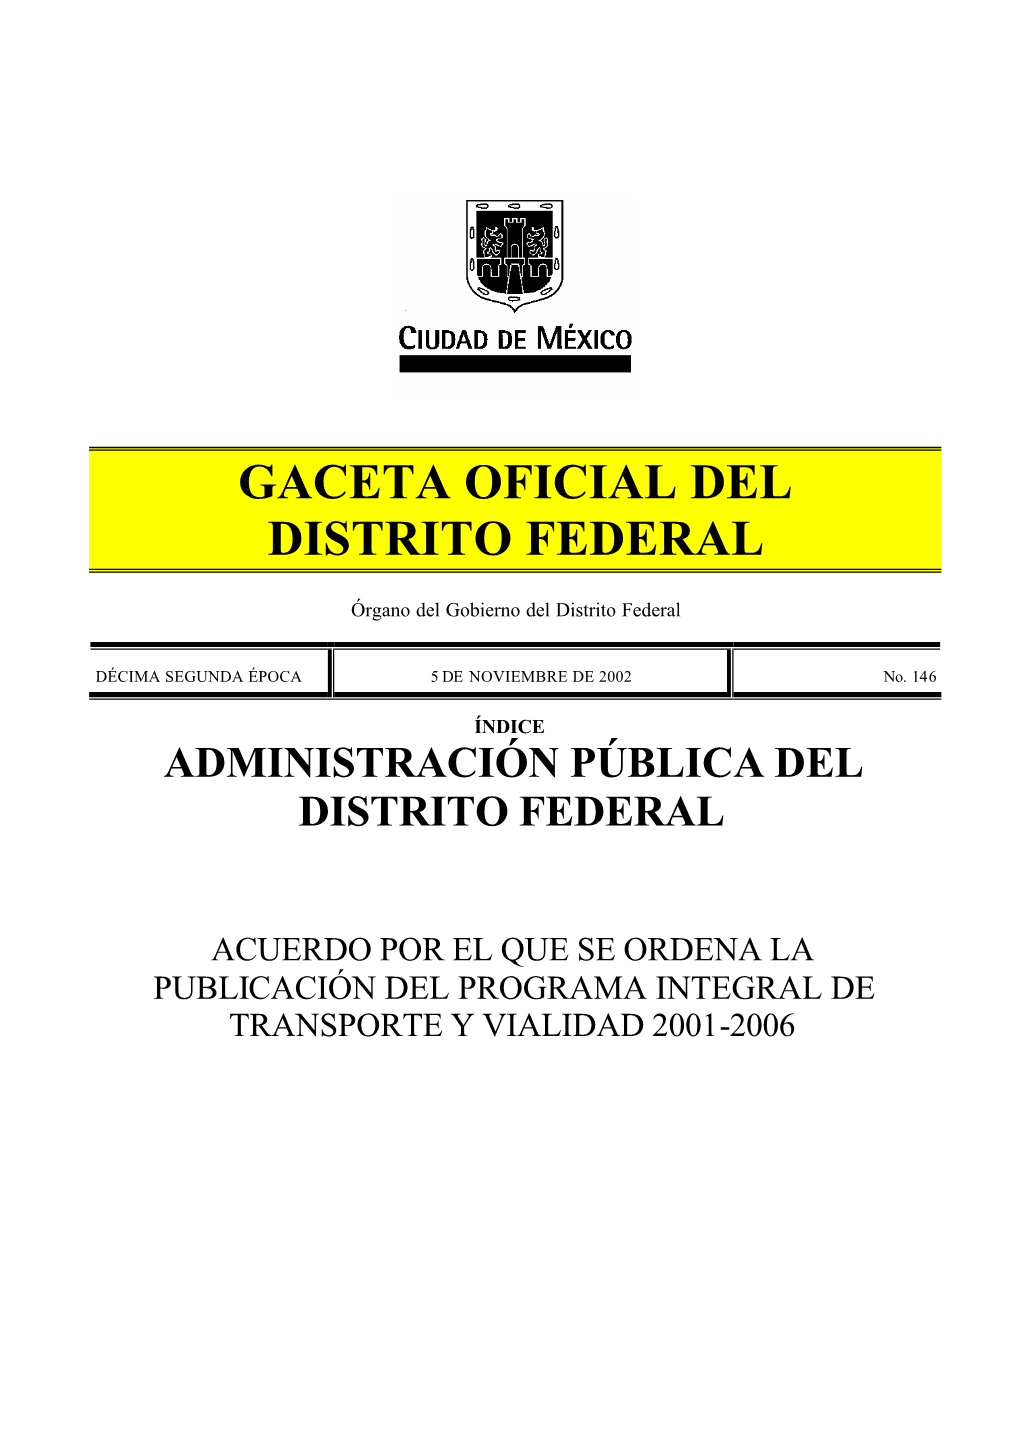 Programa Integral De Transporte Y Vialidad 2001-2006